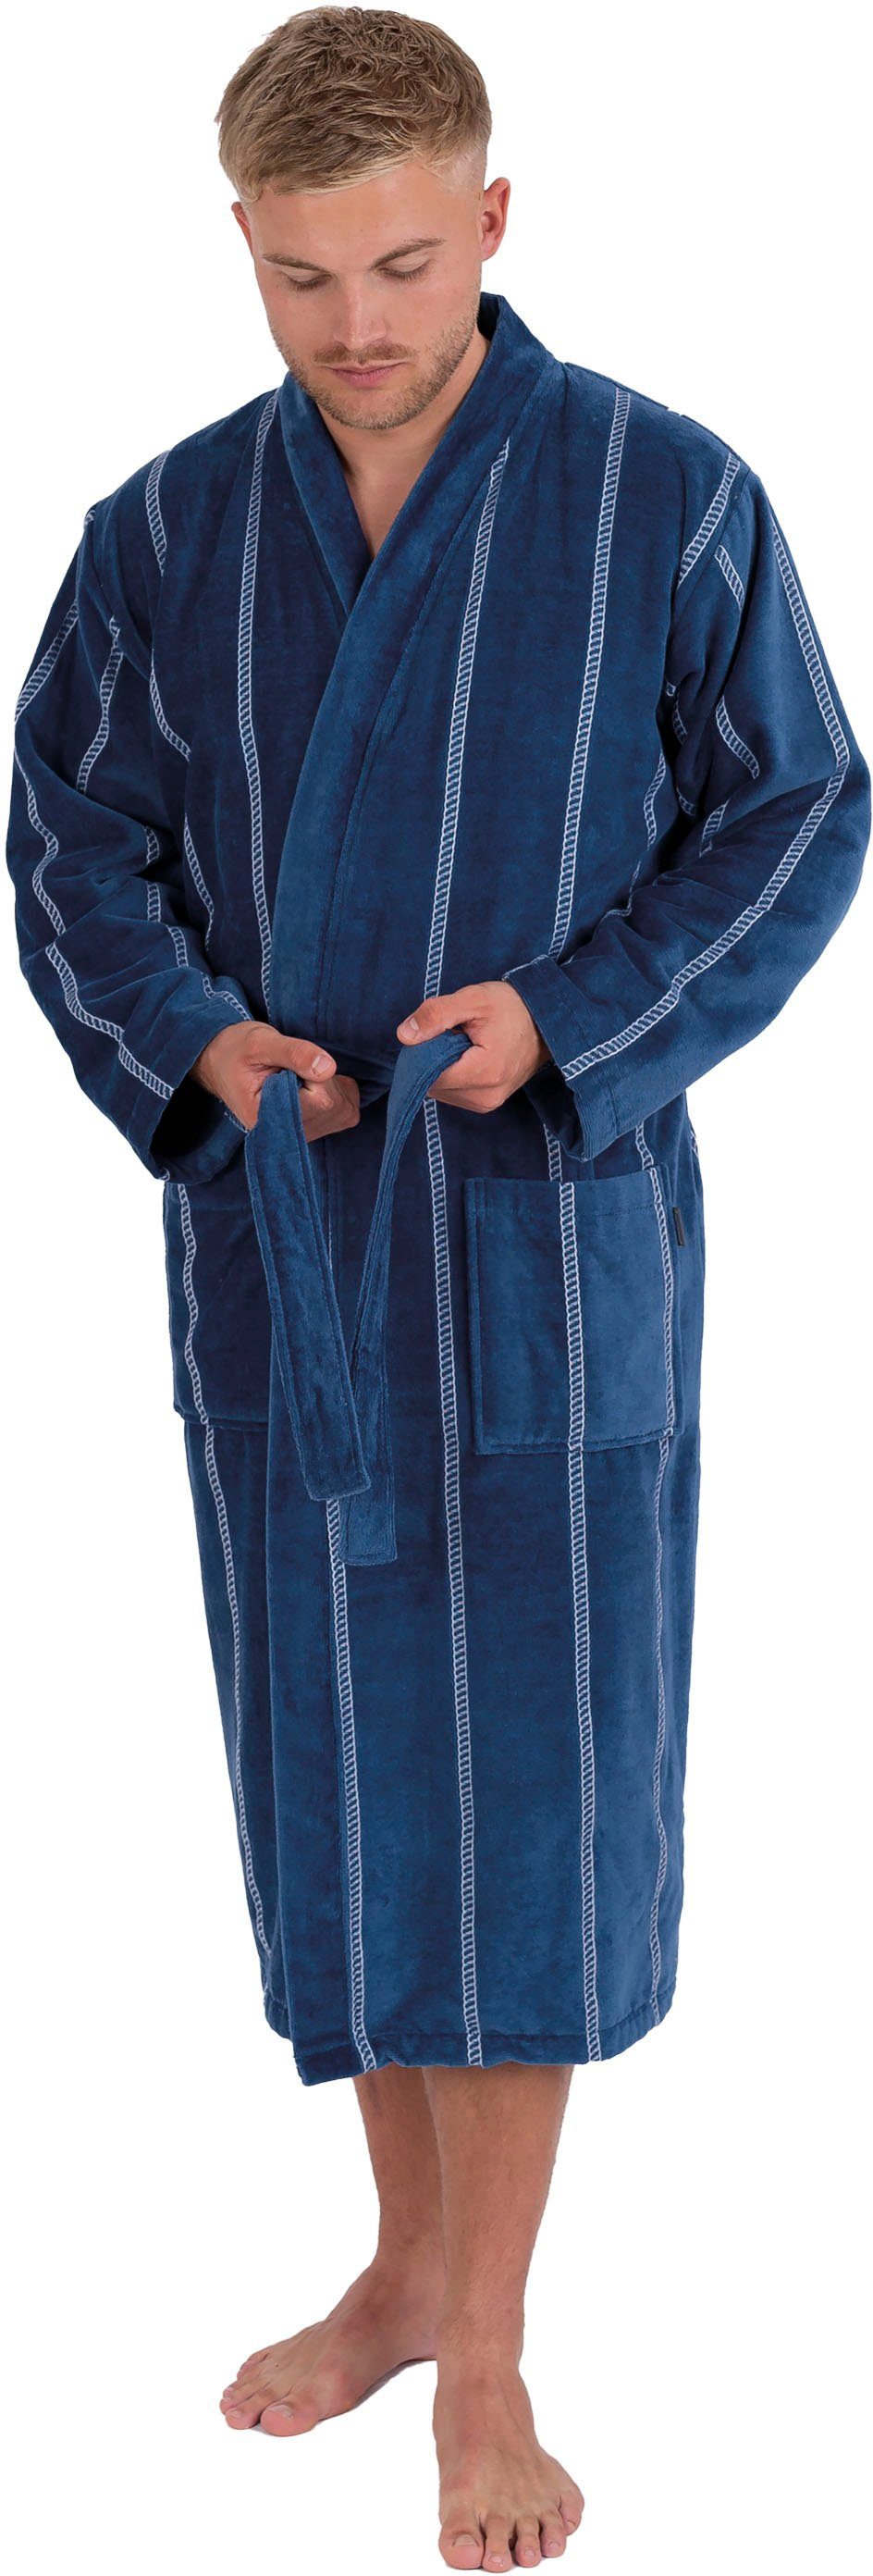 Kimono-Kragen, dunkelblau Gürtel, fashion Langform, mit Kimono-Kragen, Baumwolle, gestreift, Herrenbademantel lang 1607, Wewo